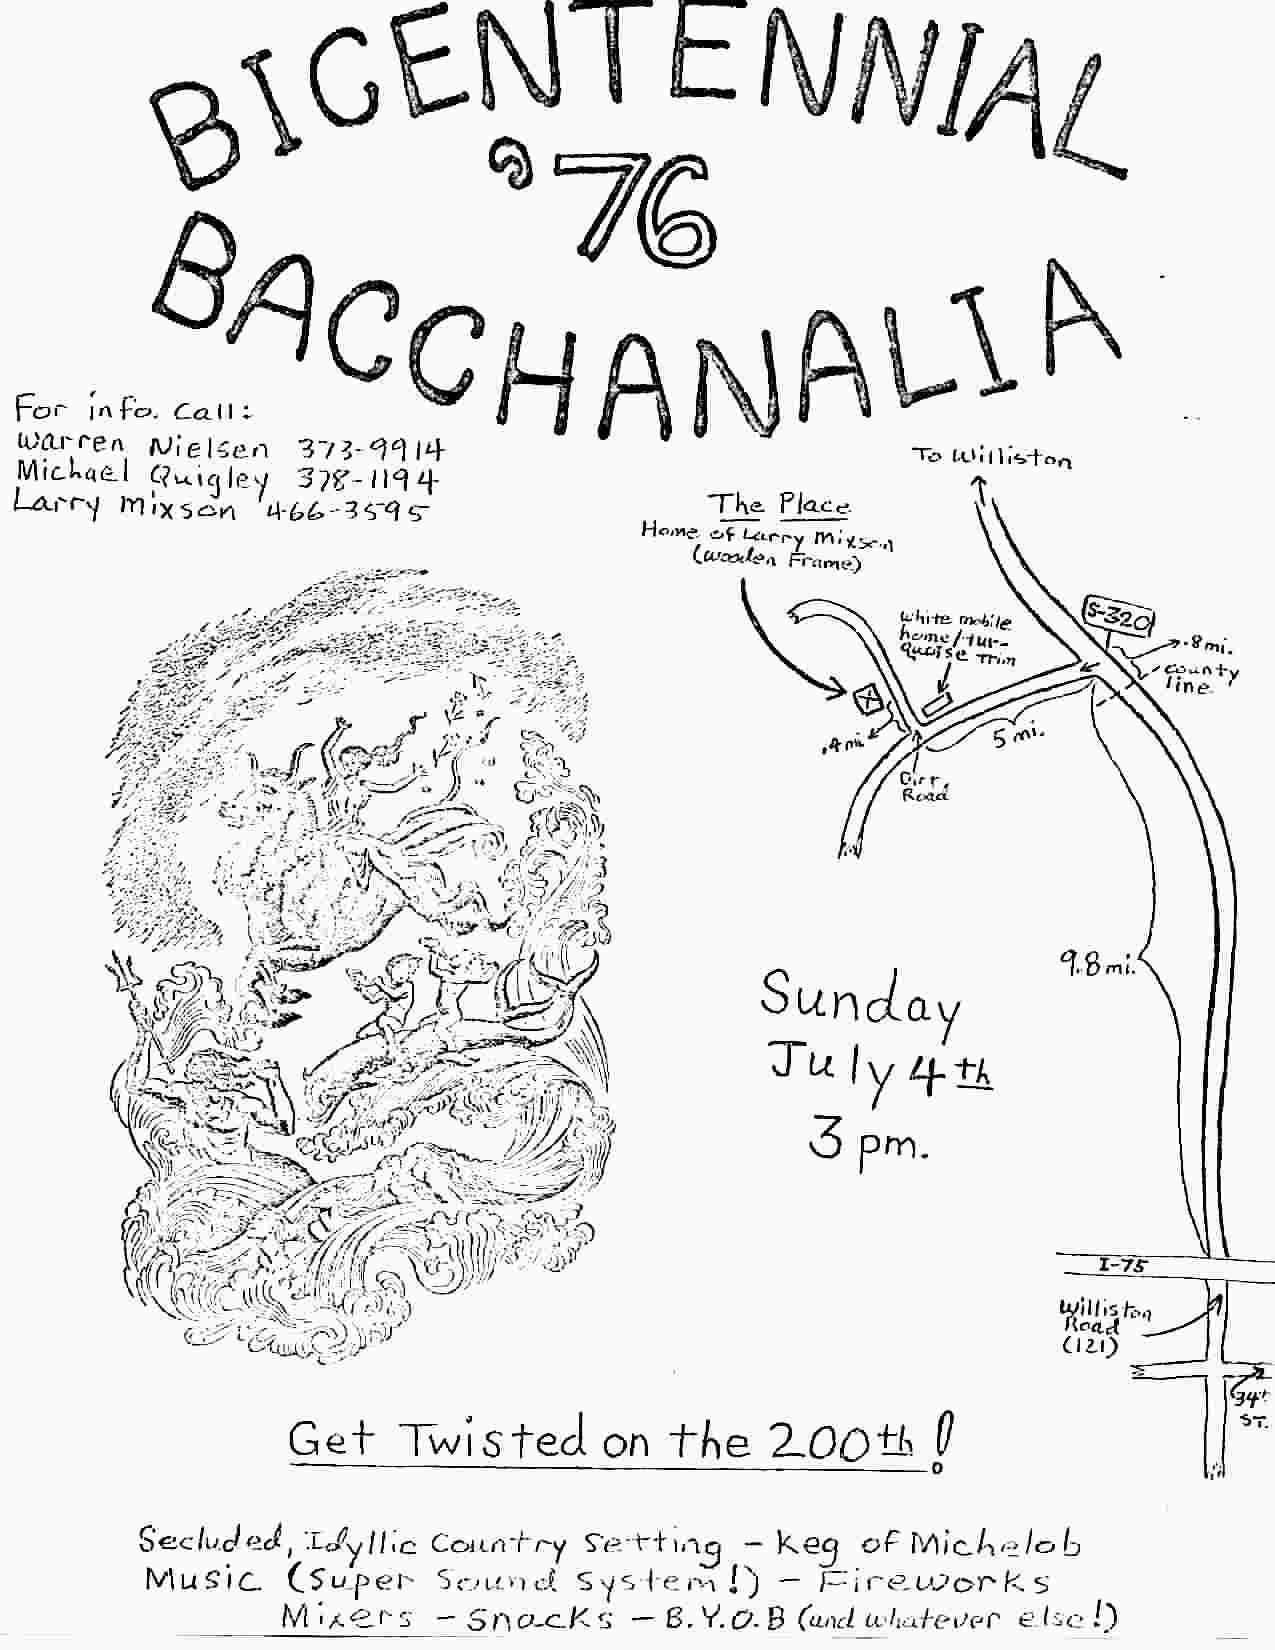 Bacchanali Party